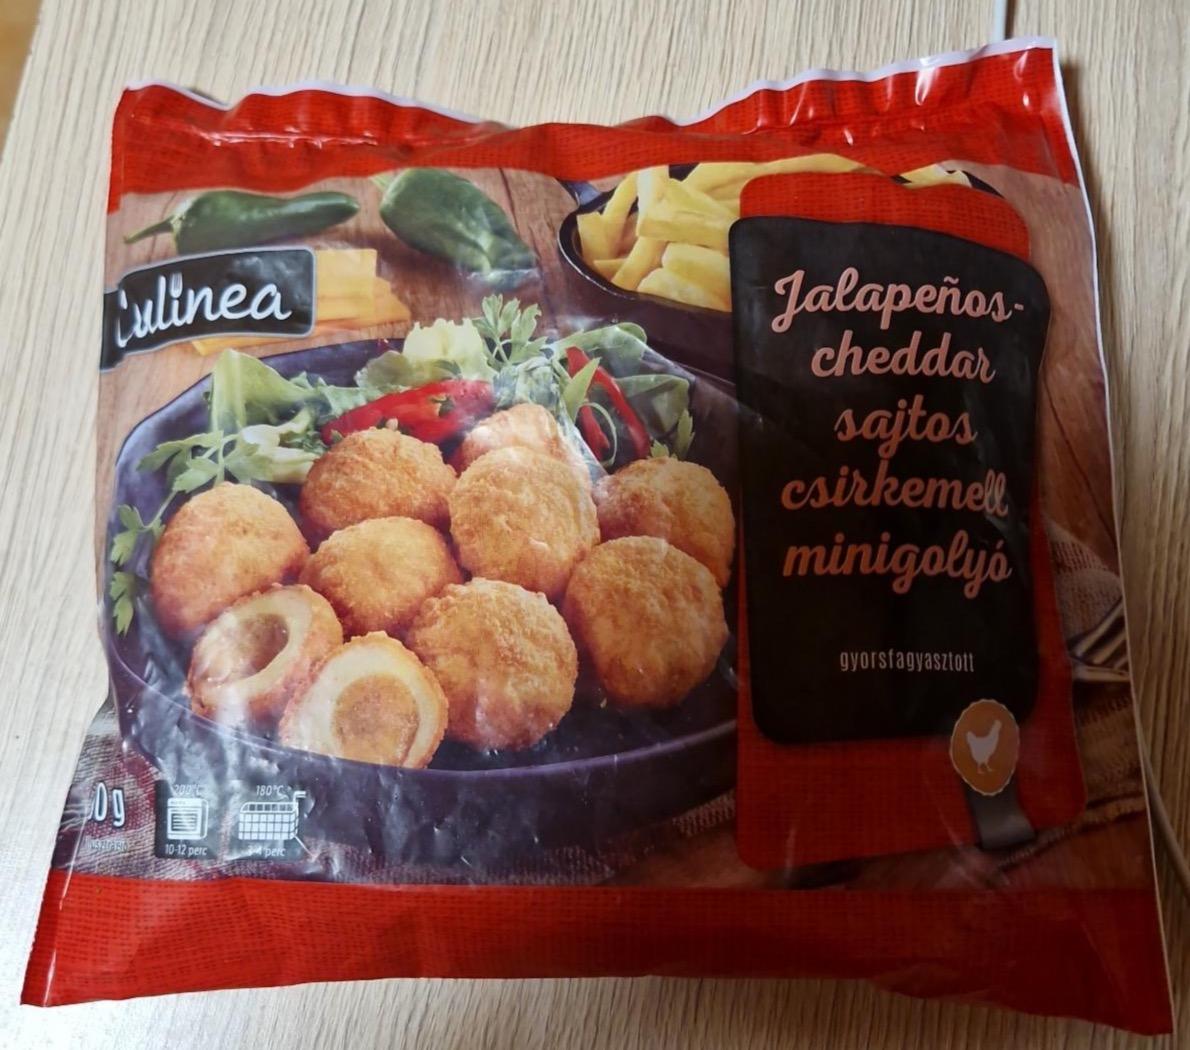 Képek - Jalapenos-cheddar sajtos csirkemell minigolyó Culinea